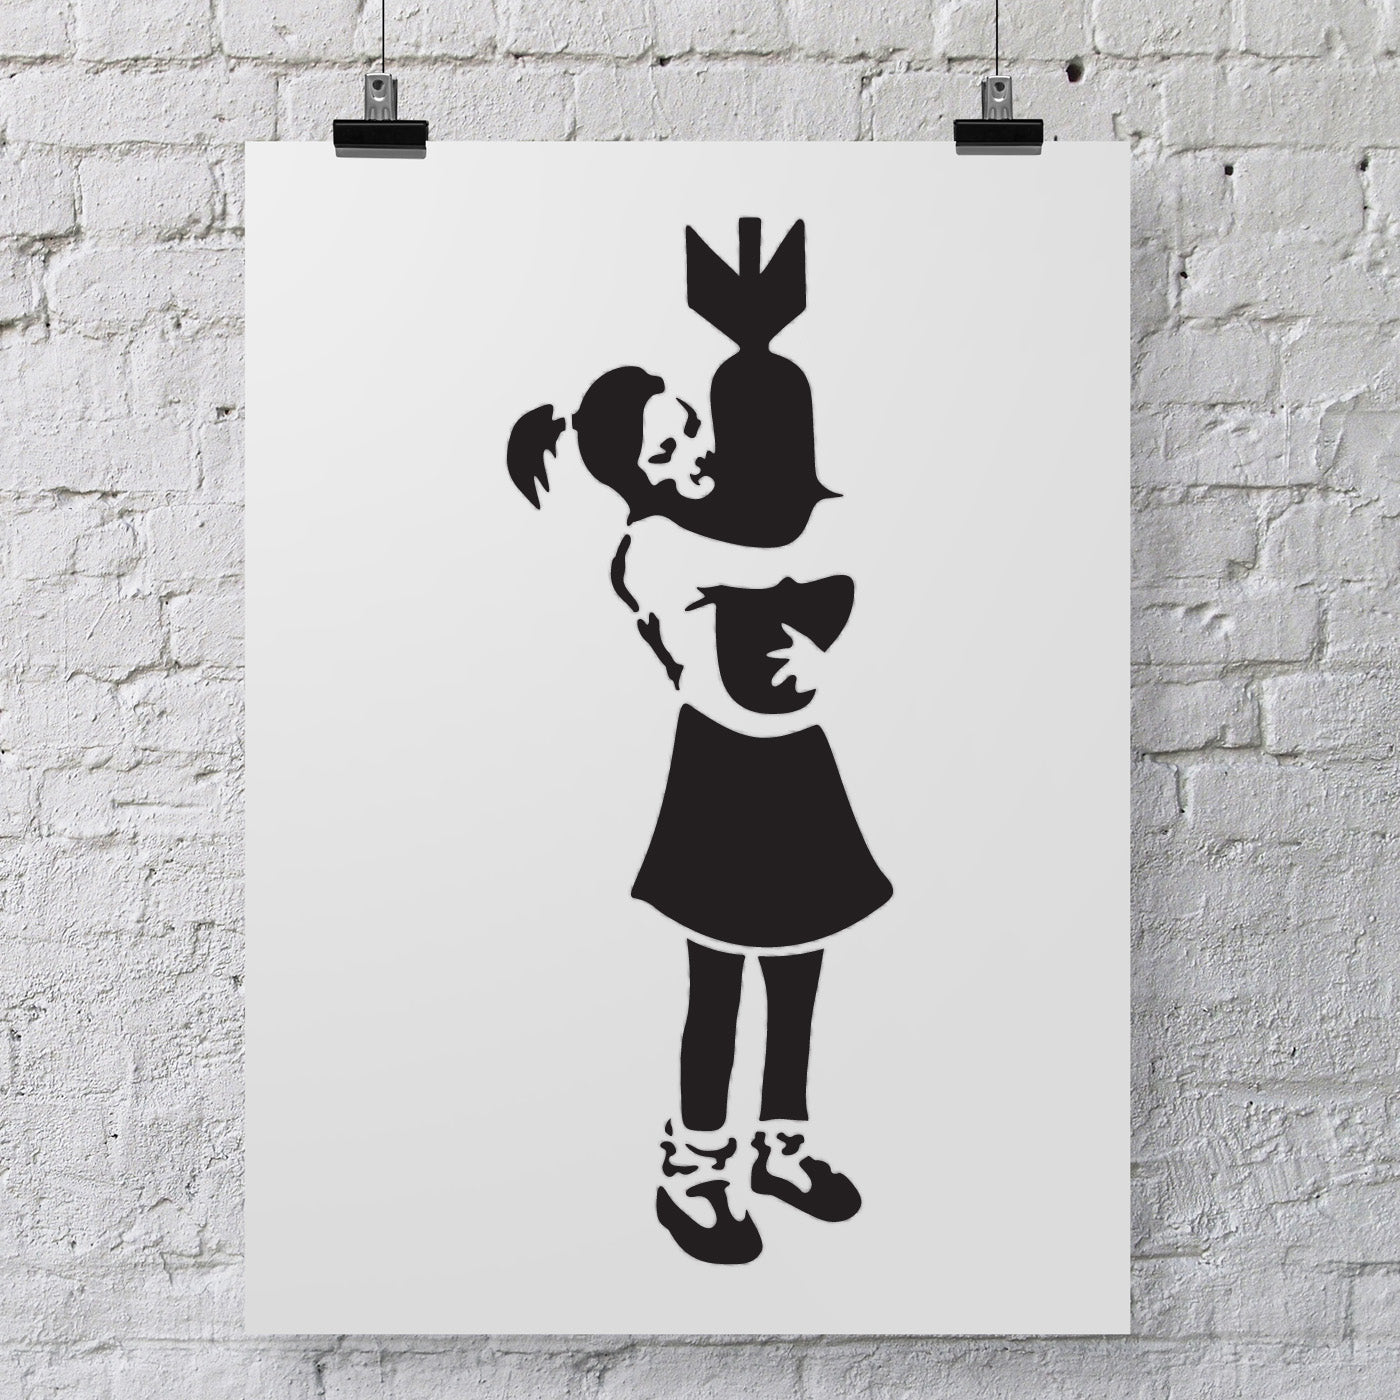 CraftStar Banksy Bomb Hugger Girl Stencil on Poster